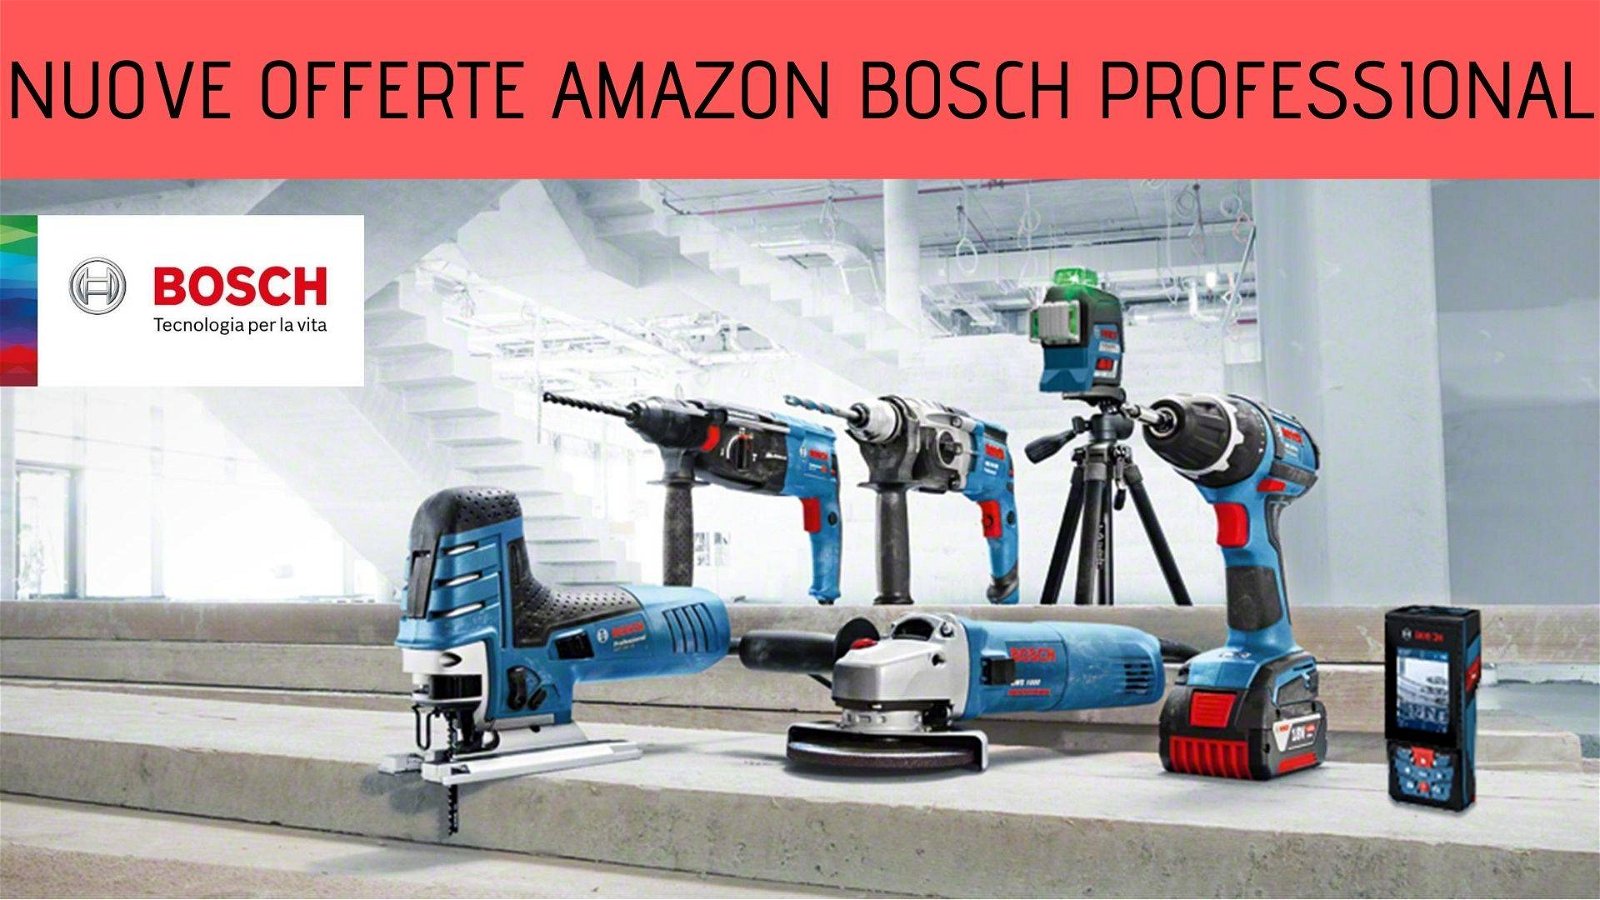 Immagine di Amazon: tornano le offerte sui prodotti Bosch Professional